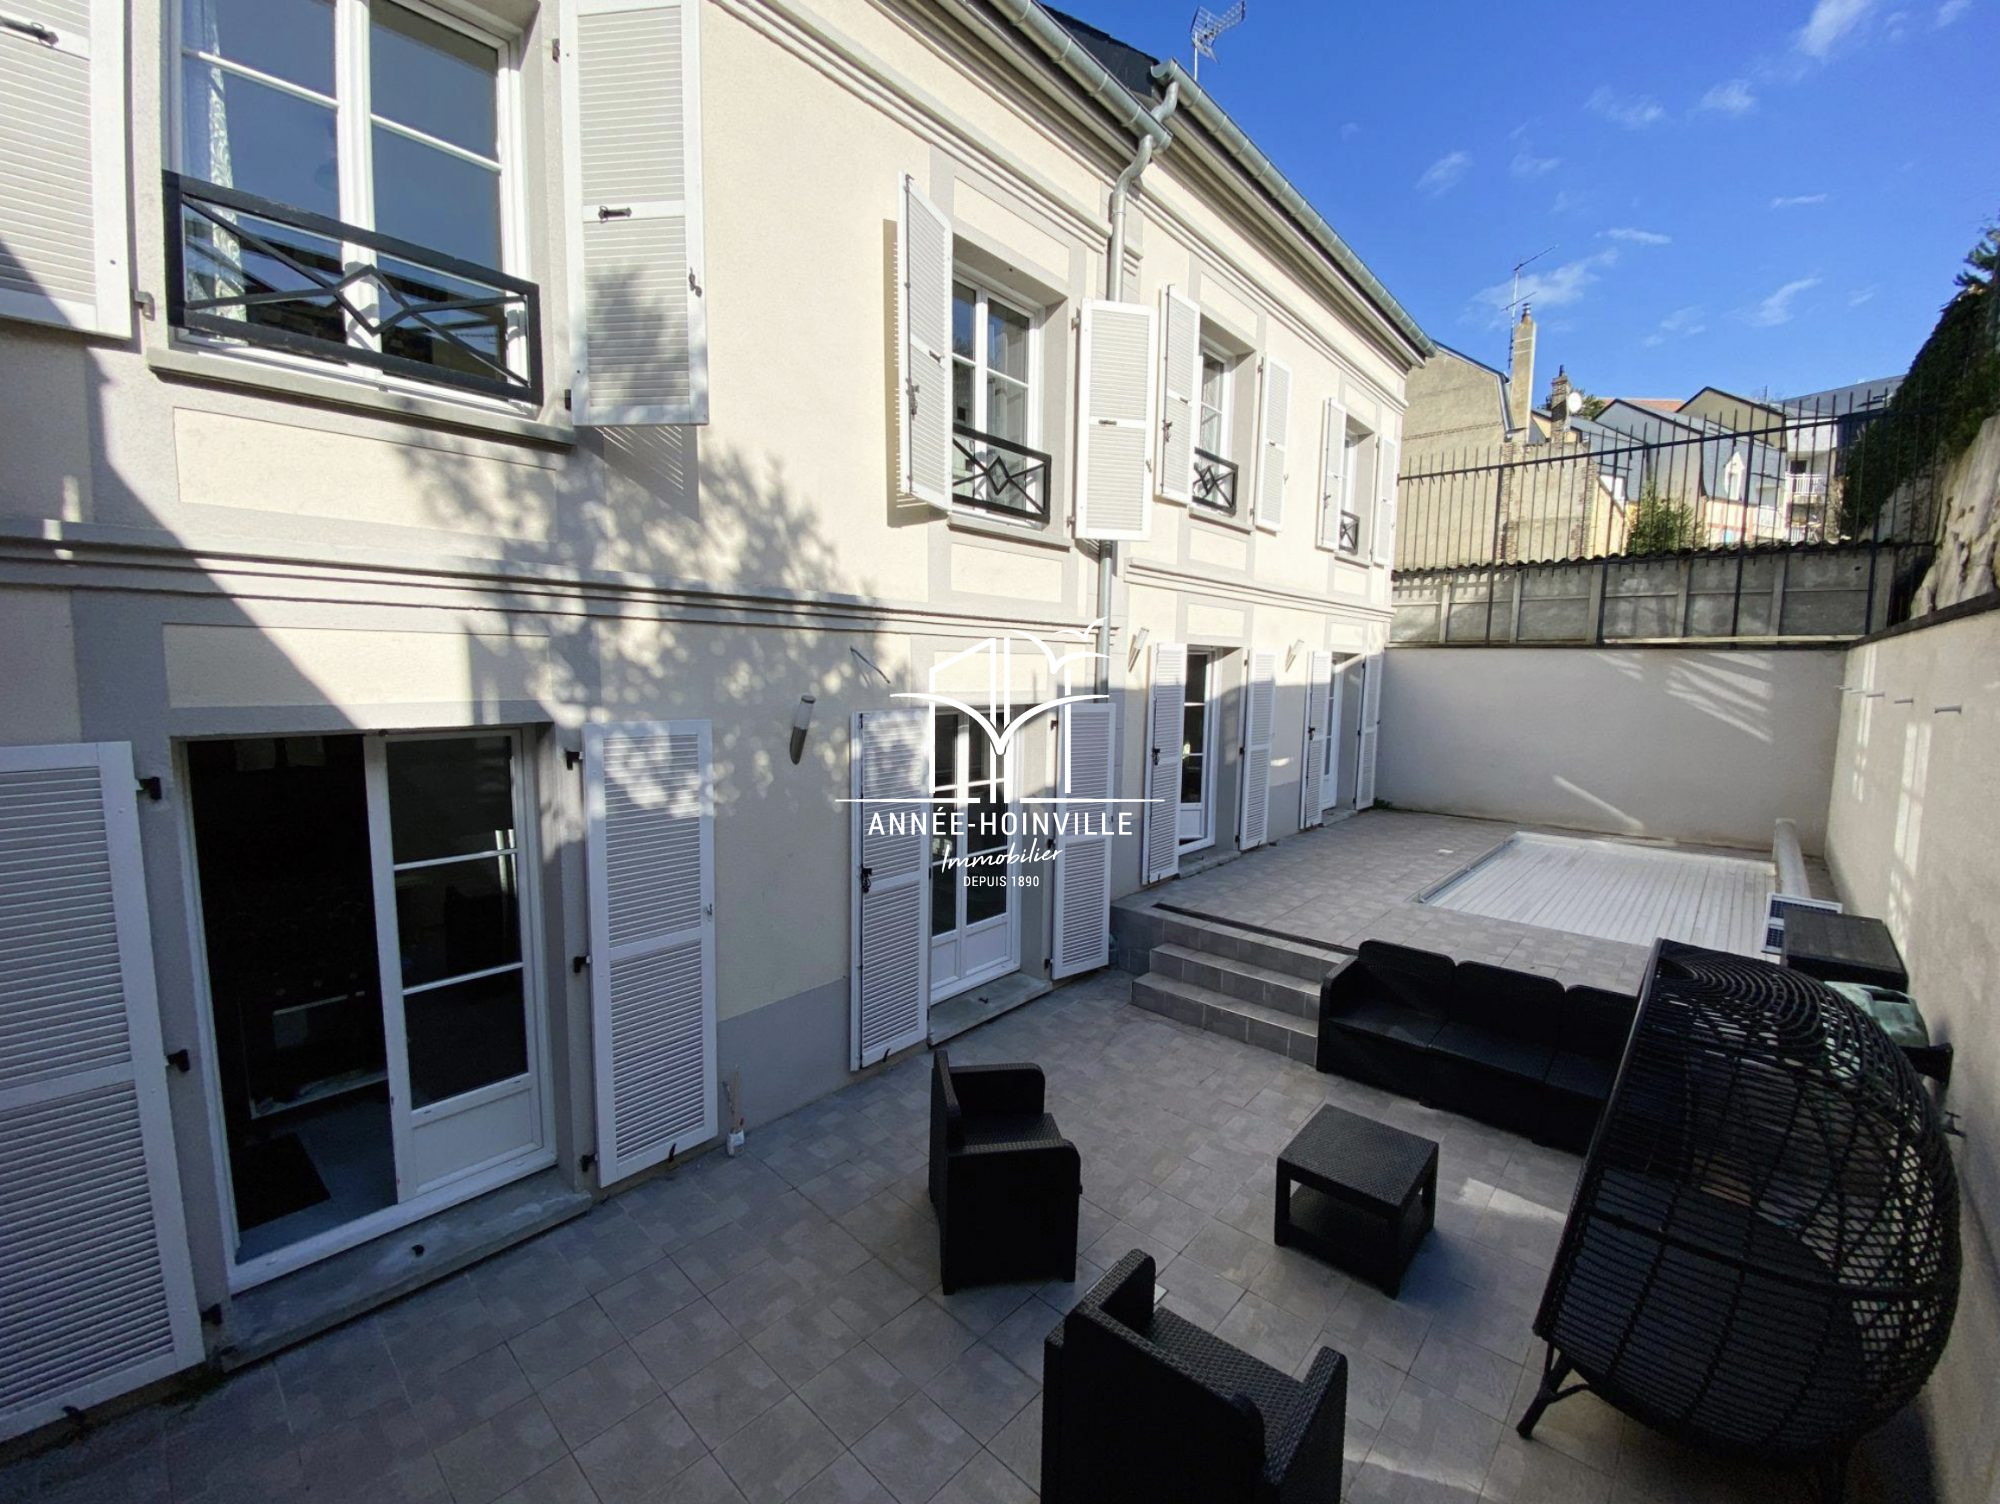 Vente Maison 225m² 9 Pièces à Trouville-sur-Mer (14360) - Année-Hoinville Immobilier